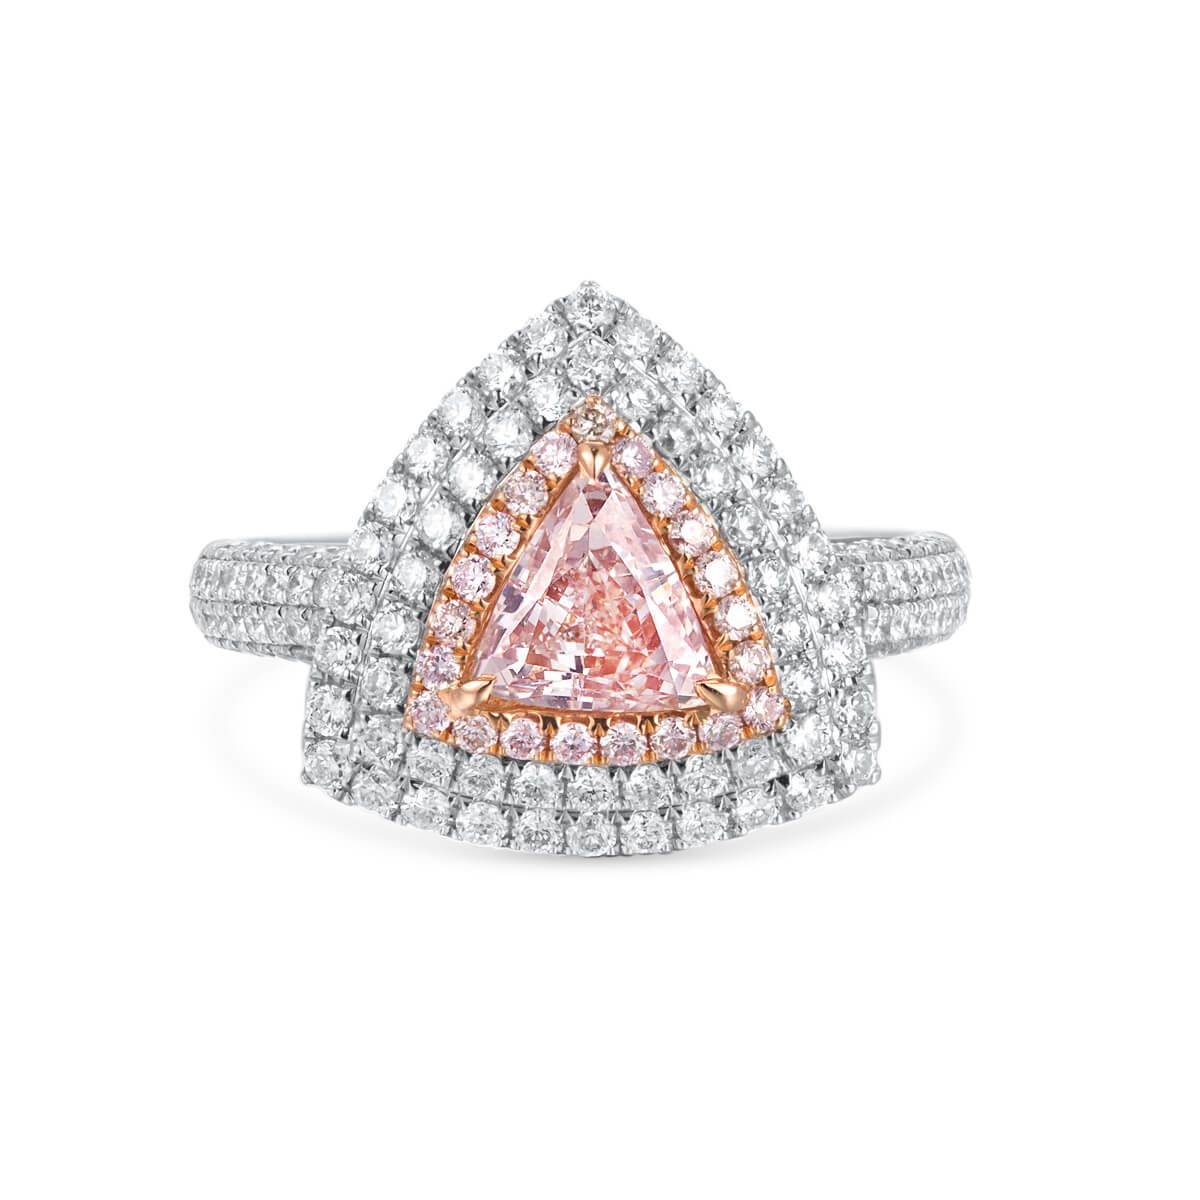 浅 呈橙色的 粉色 钻石 戒指, 0.81 重量 (1.76 克拉 总重), 三角形 形状, GIA 认证, 15281496